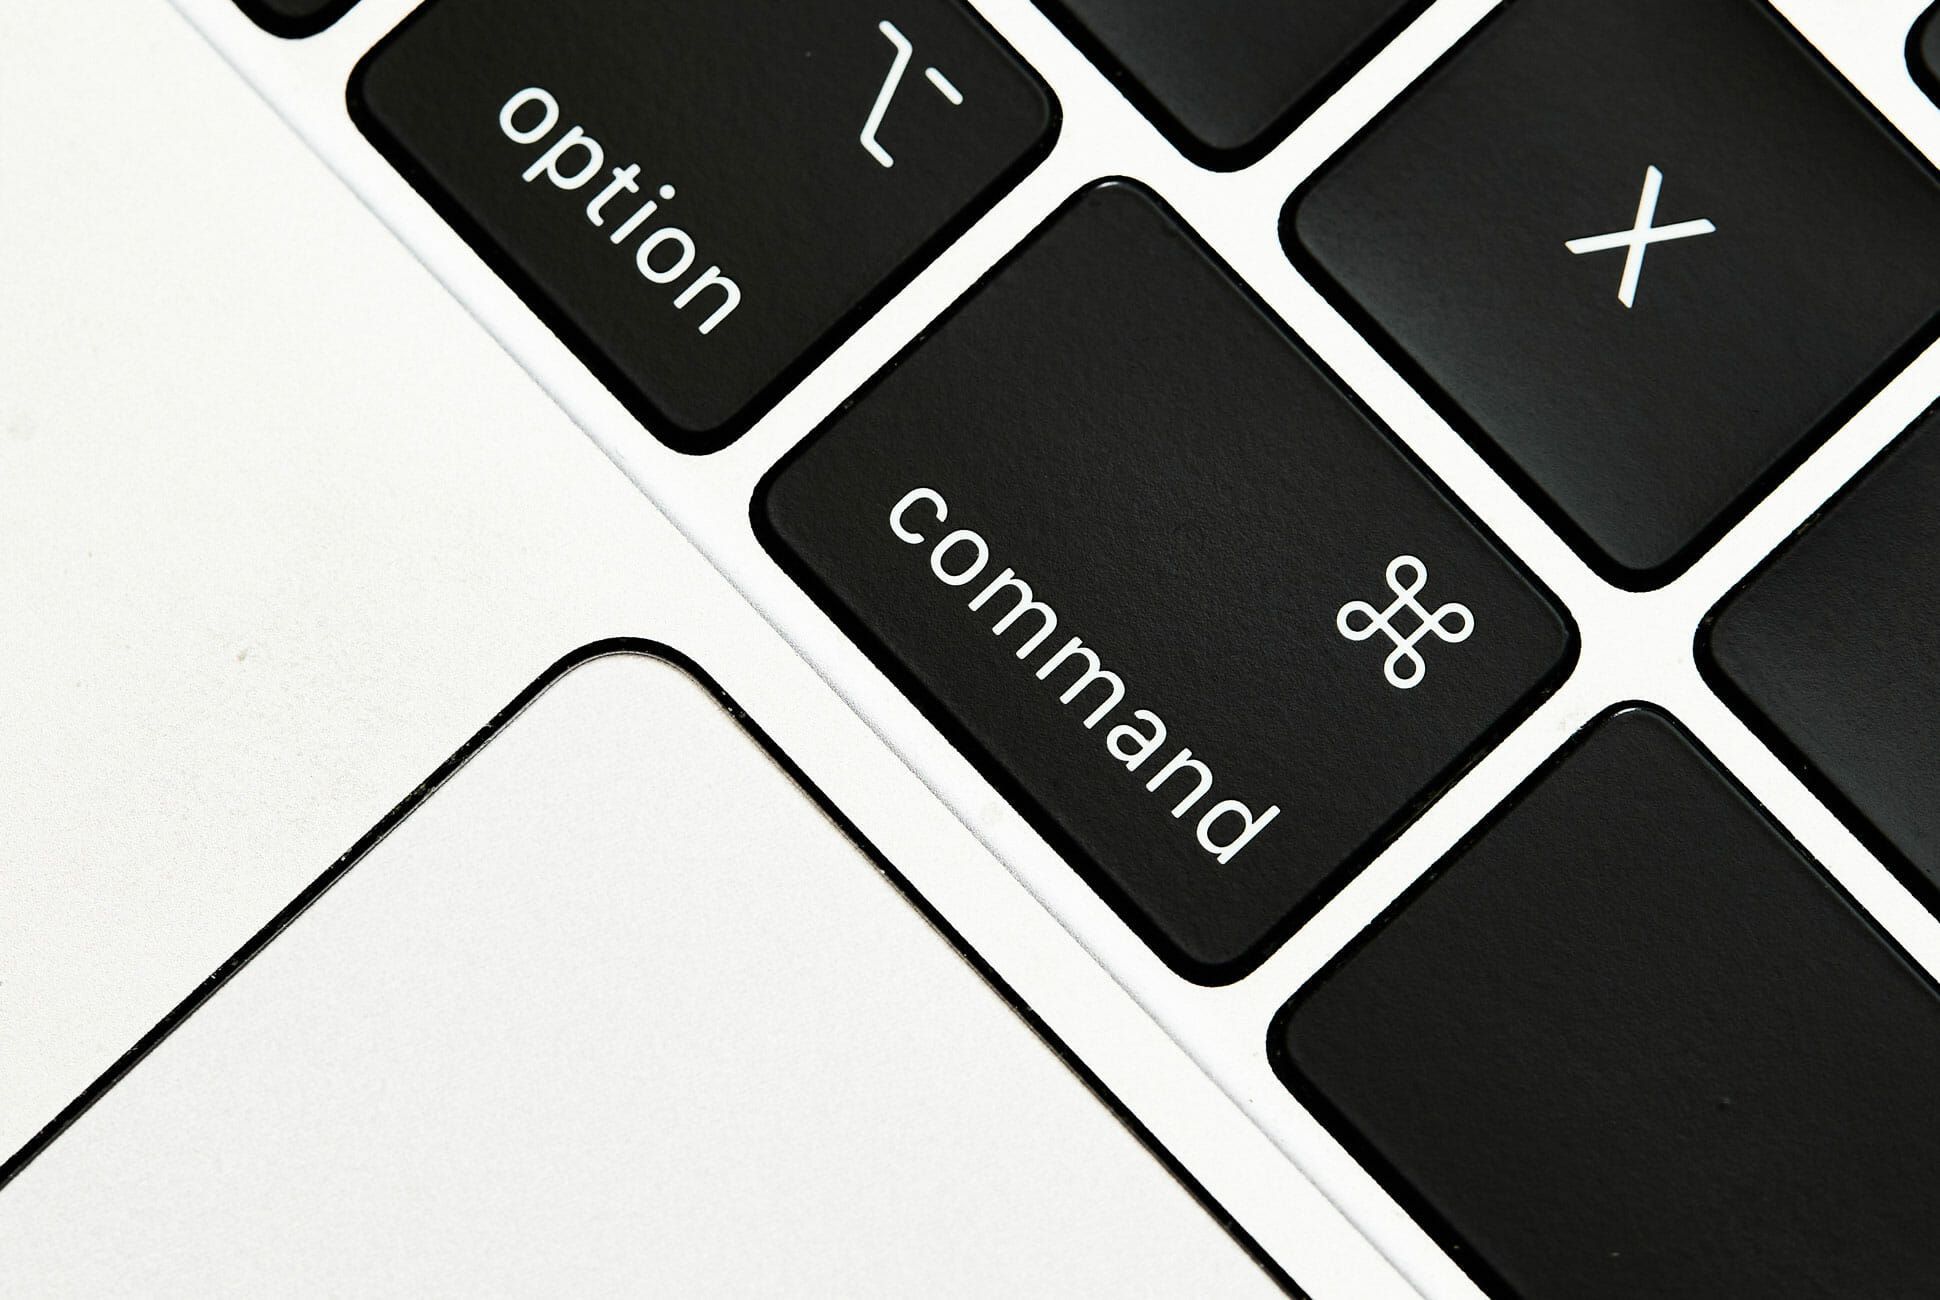 Giải mã nguồn gốc biểu tượng Command đầy bí ẩn trên bàn phím của Apple